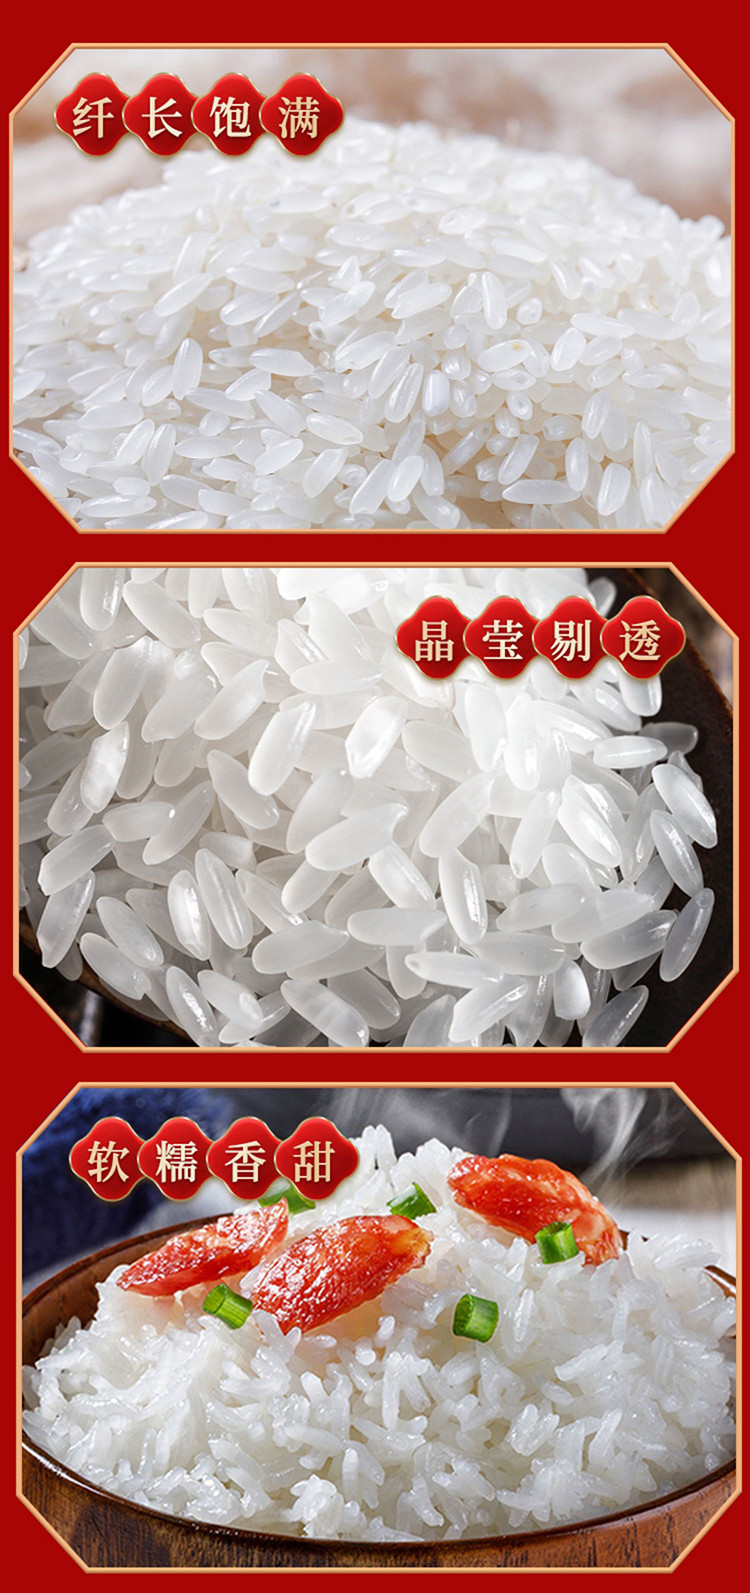 三人行 稻香米东北大米有机大米现磨新米 5 公斤